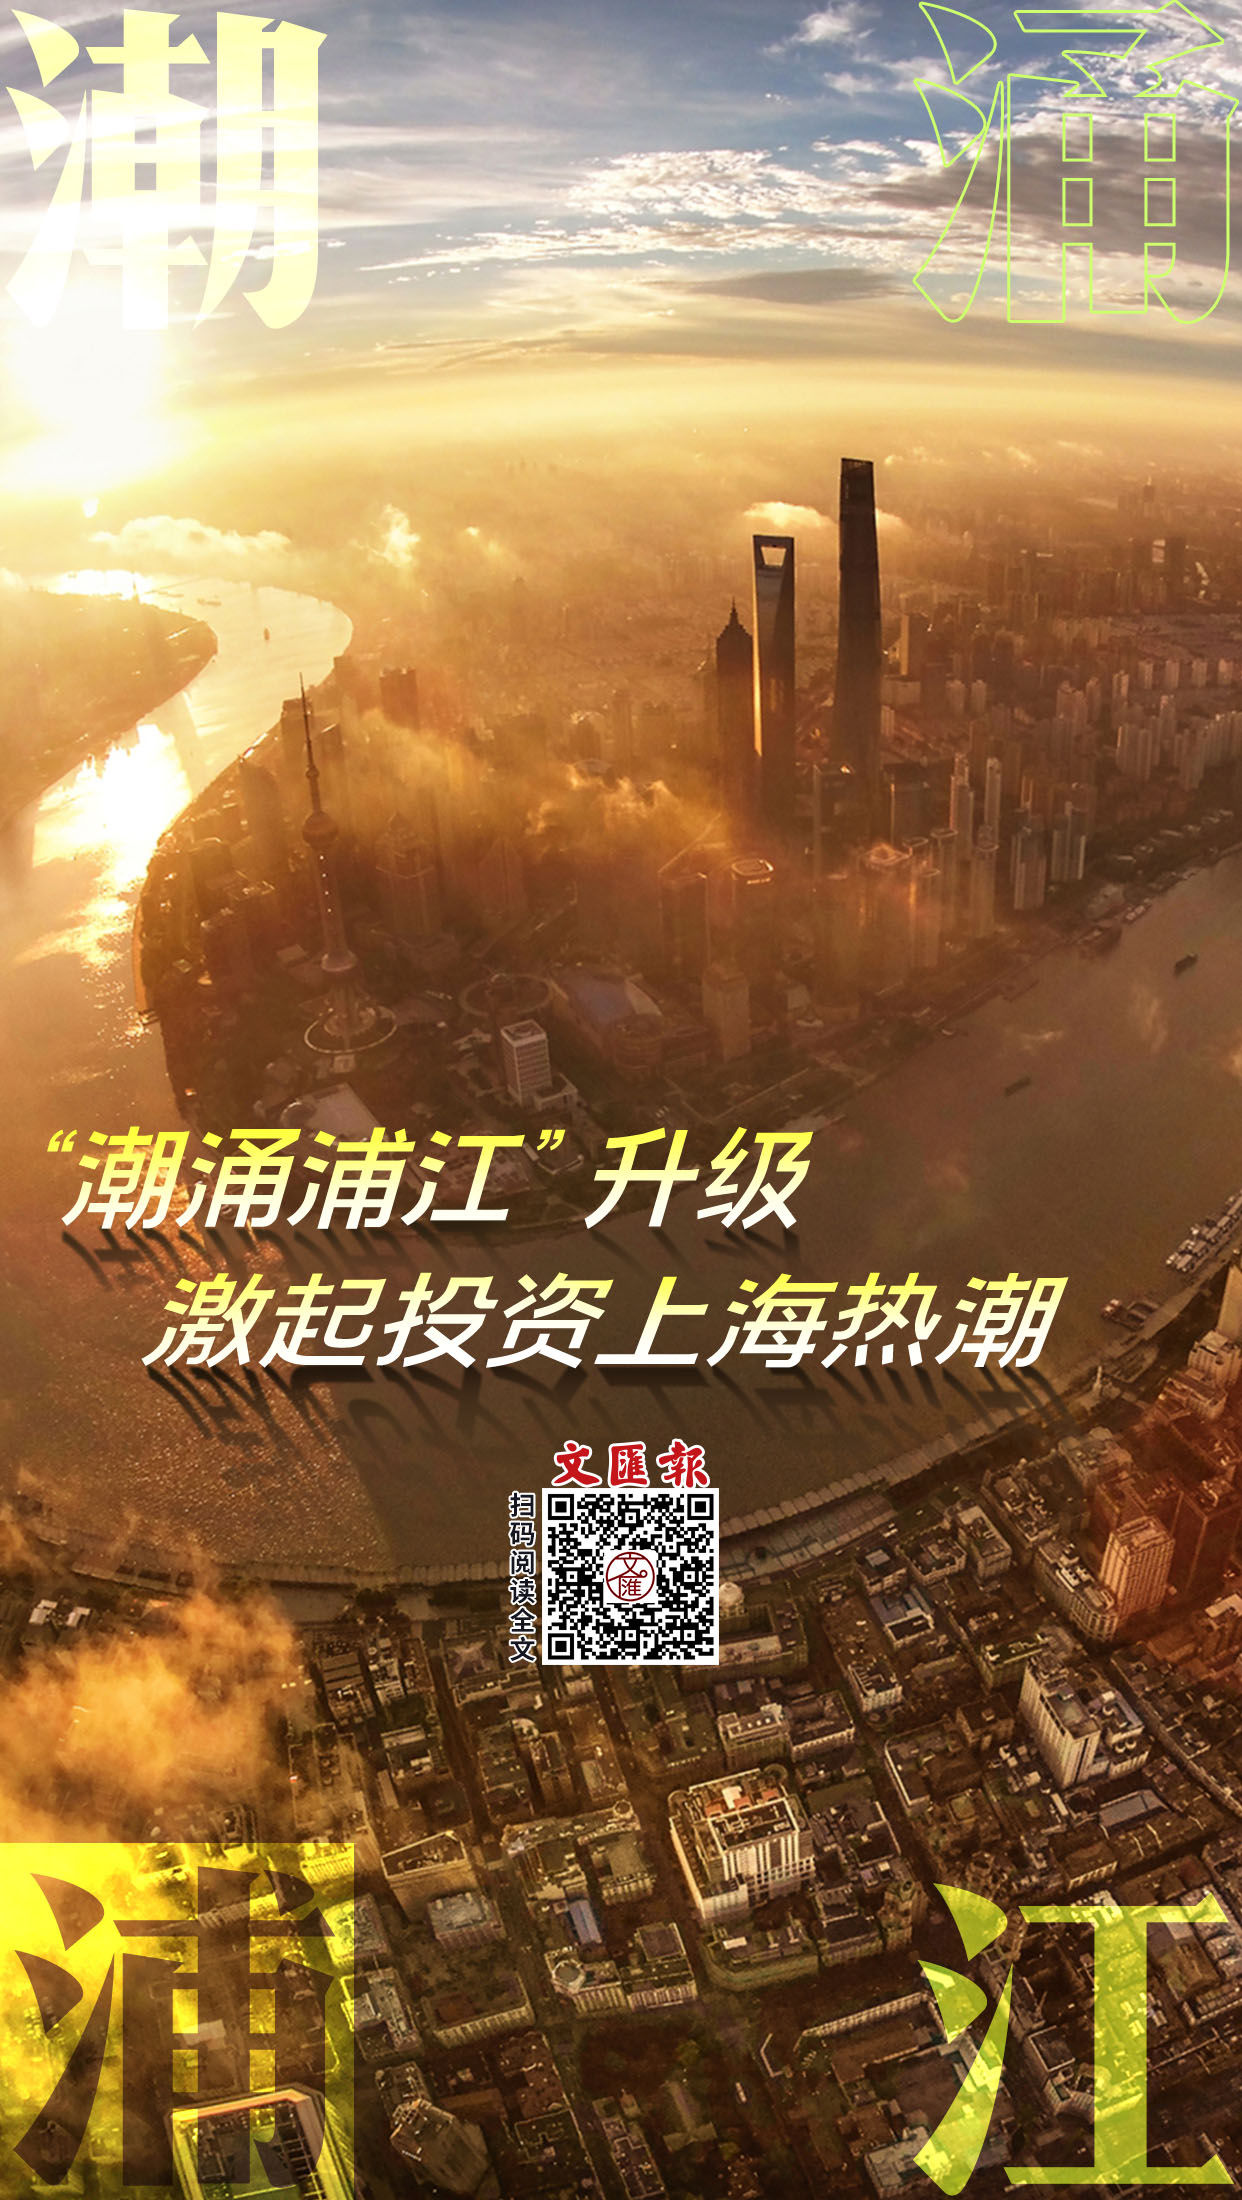 海报 | “潮涌浦江”升级，激起投资上海热潮